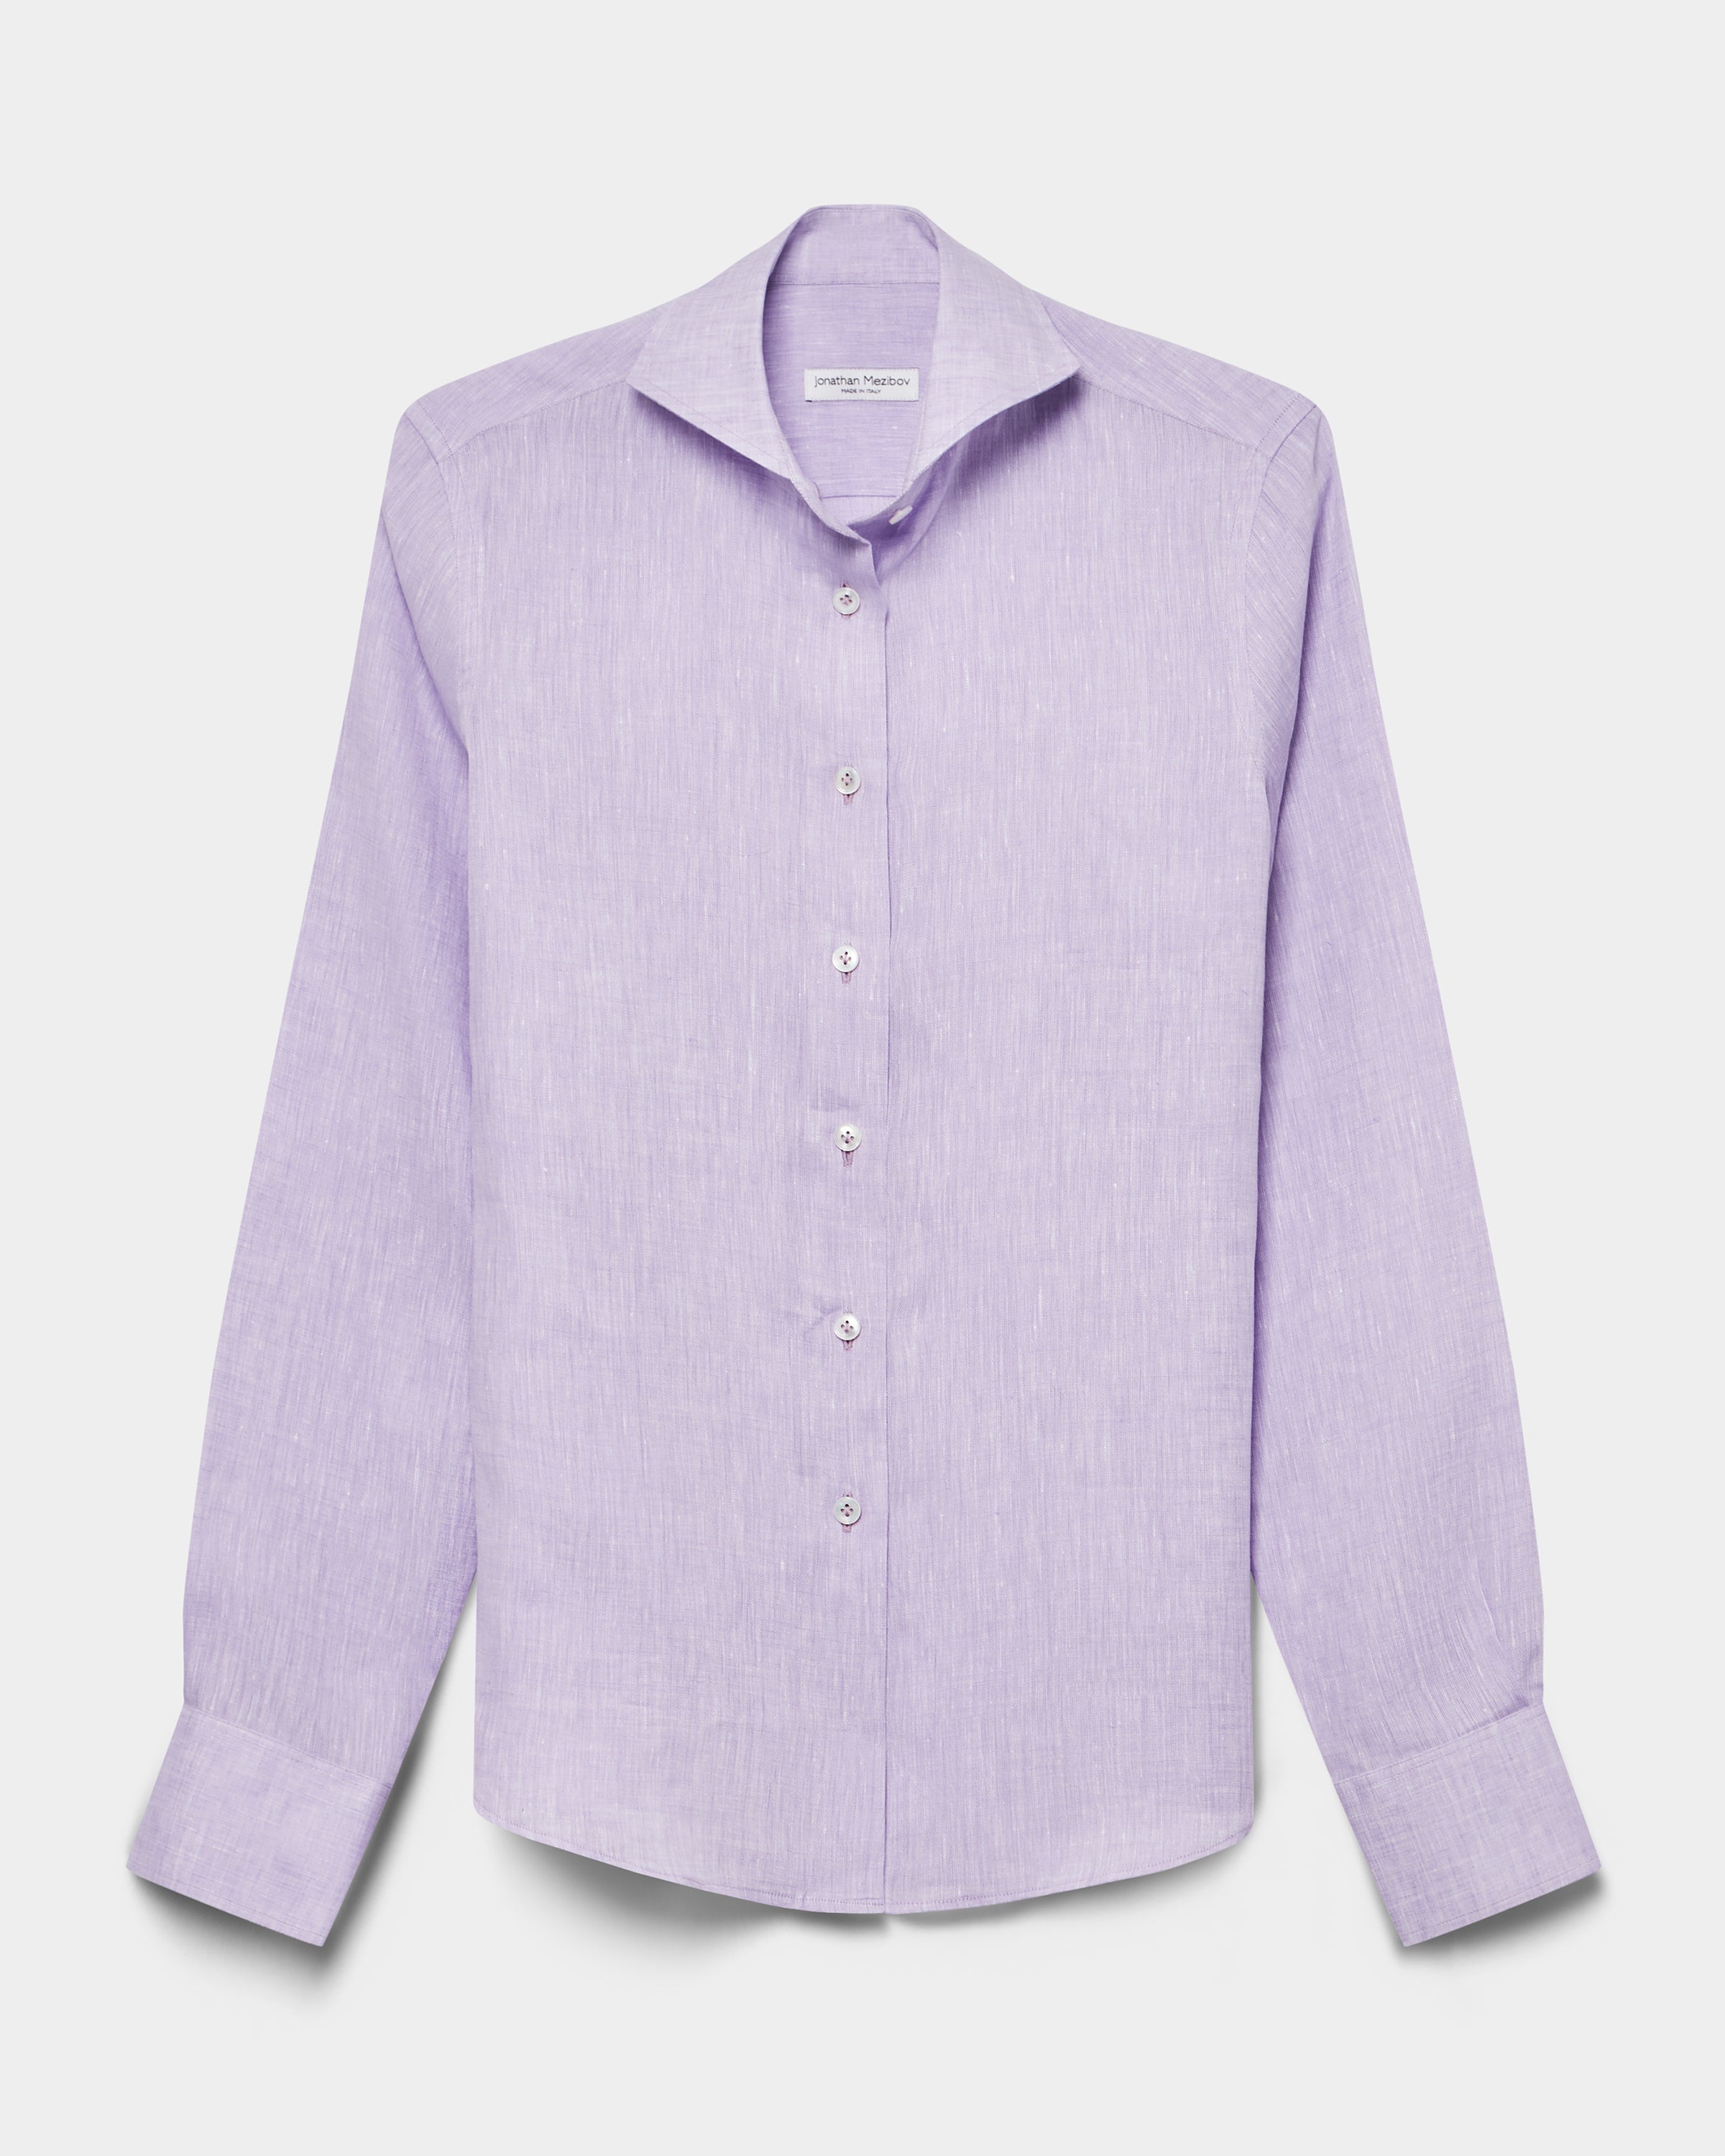 Pearson Linen Shirt - Preorder